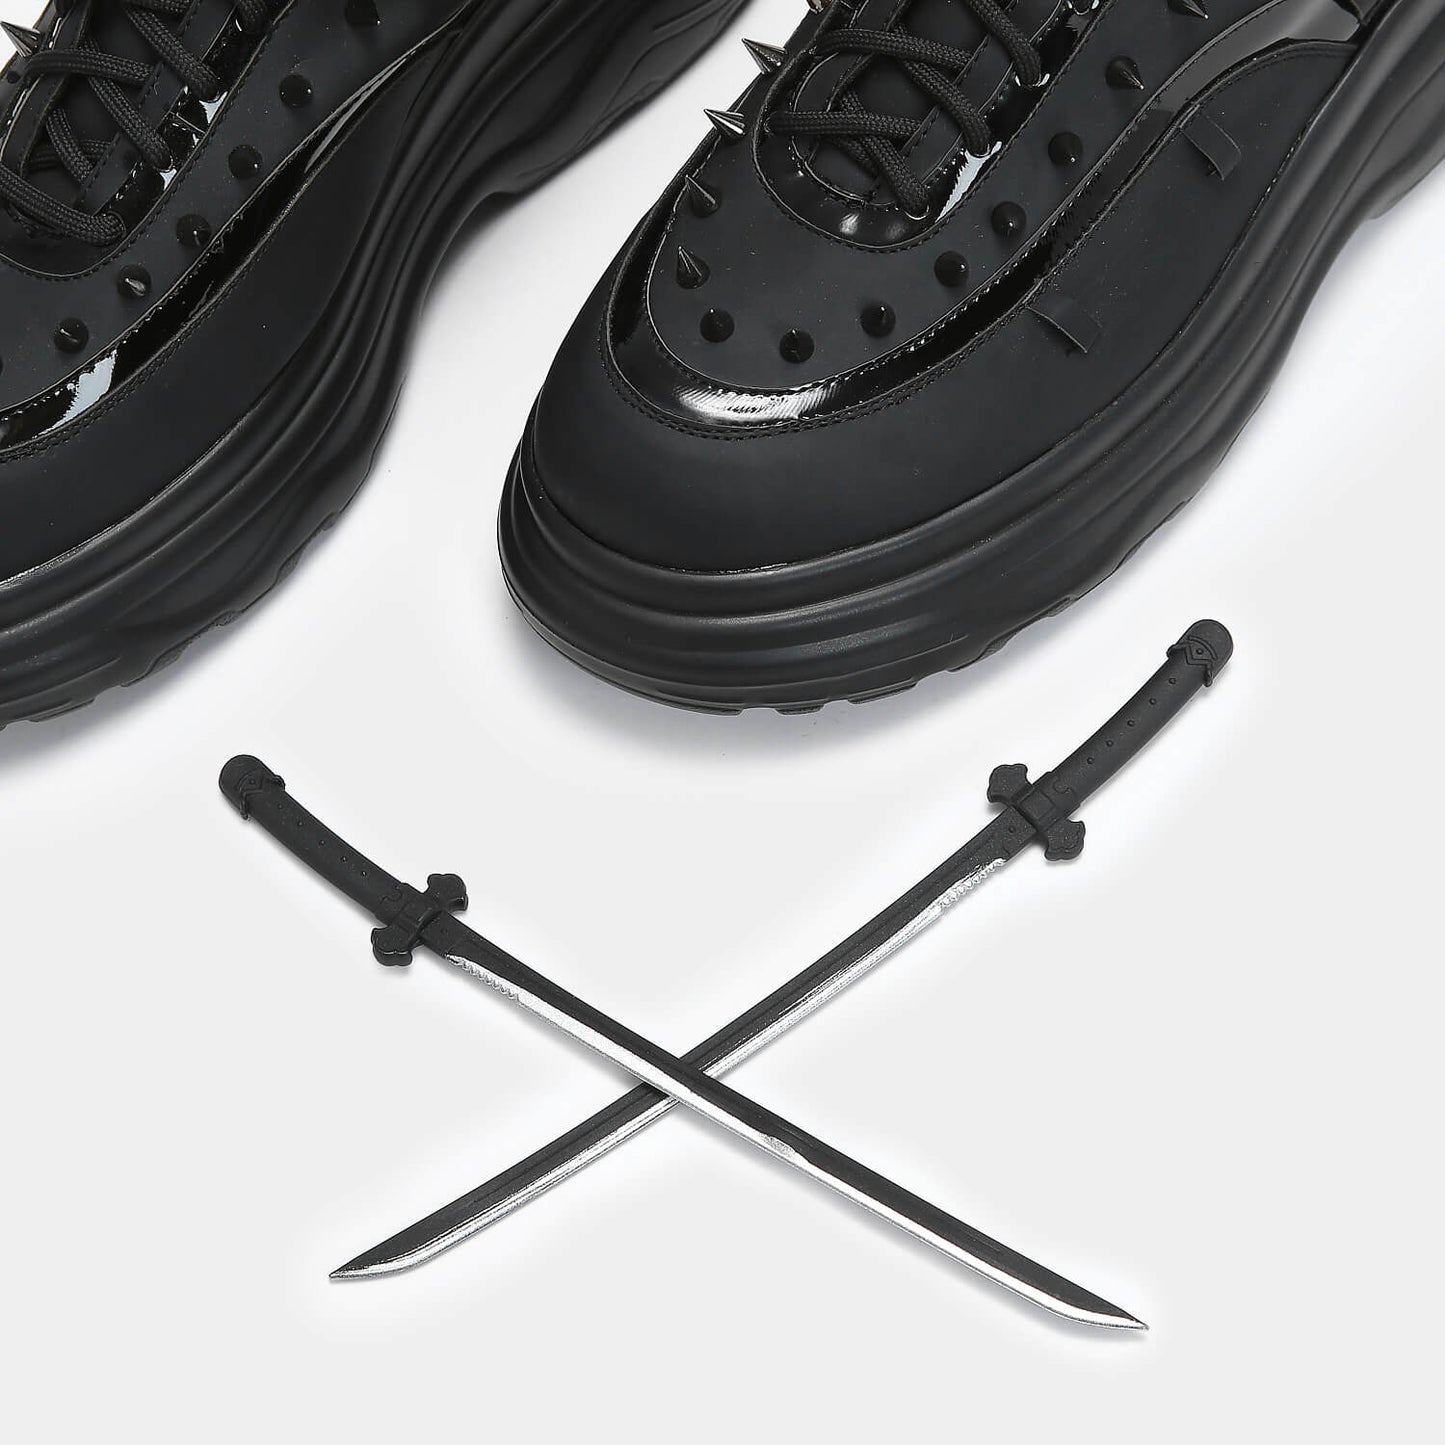 Takeda Sword Trainers - Trainers - KOI Footwear - Black - Detail